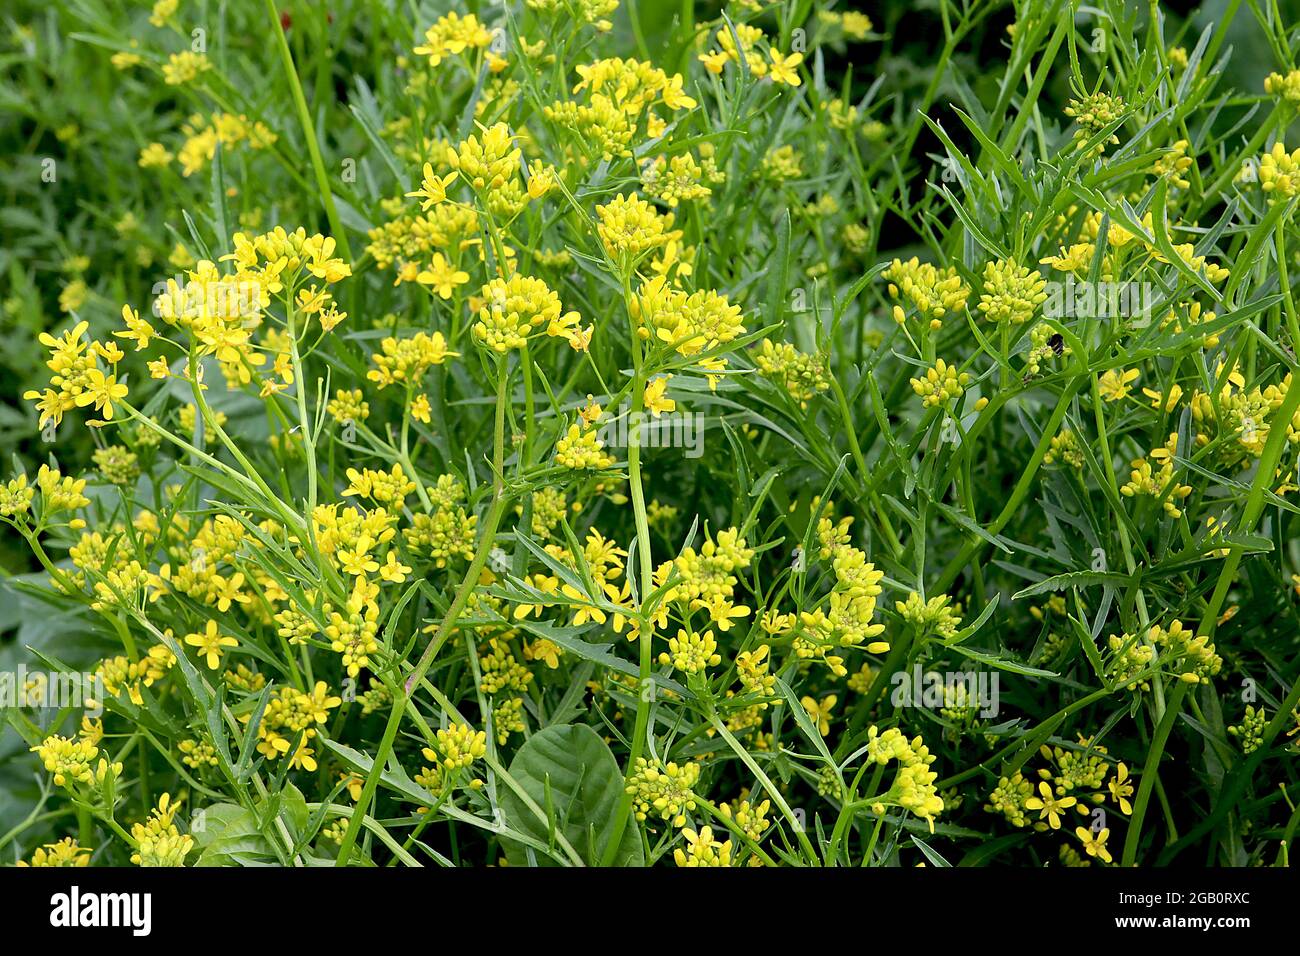 Rorippa sylvestris, cresson jaune rampant – grappes de petites fleurs jaunes sur des tiges épaisses et des feuilles finement lobées, juin, Angleterre, Royaume-Uni Banque D'Images